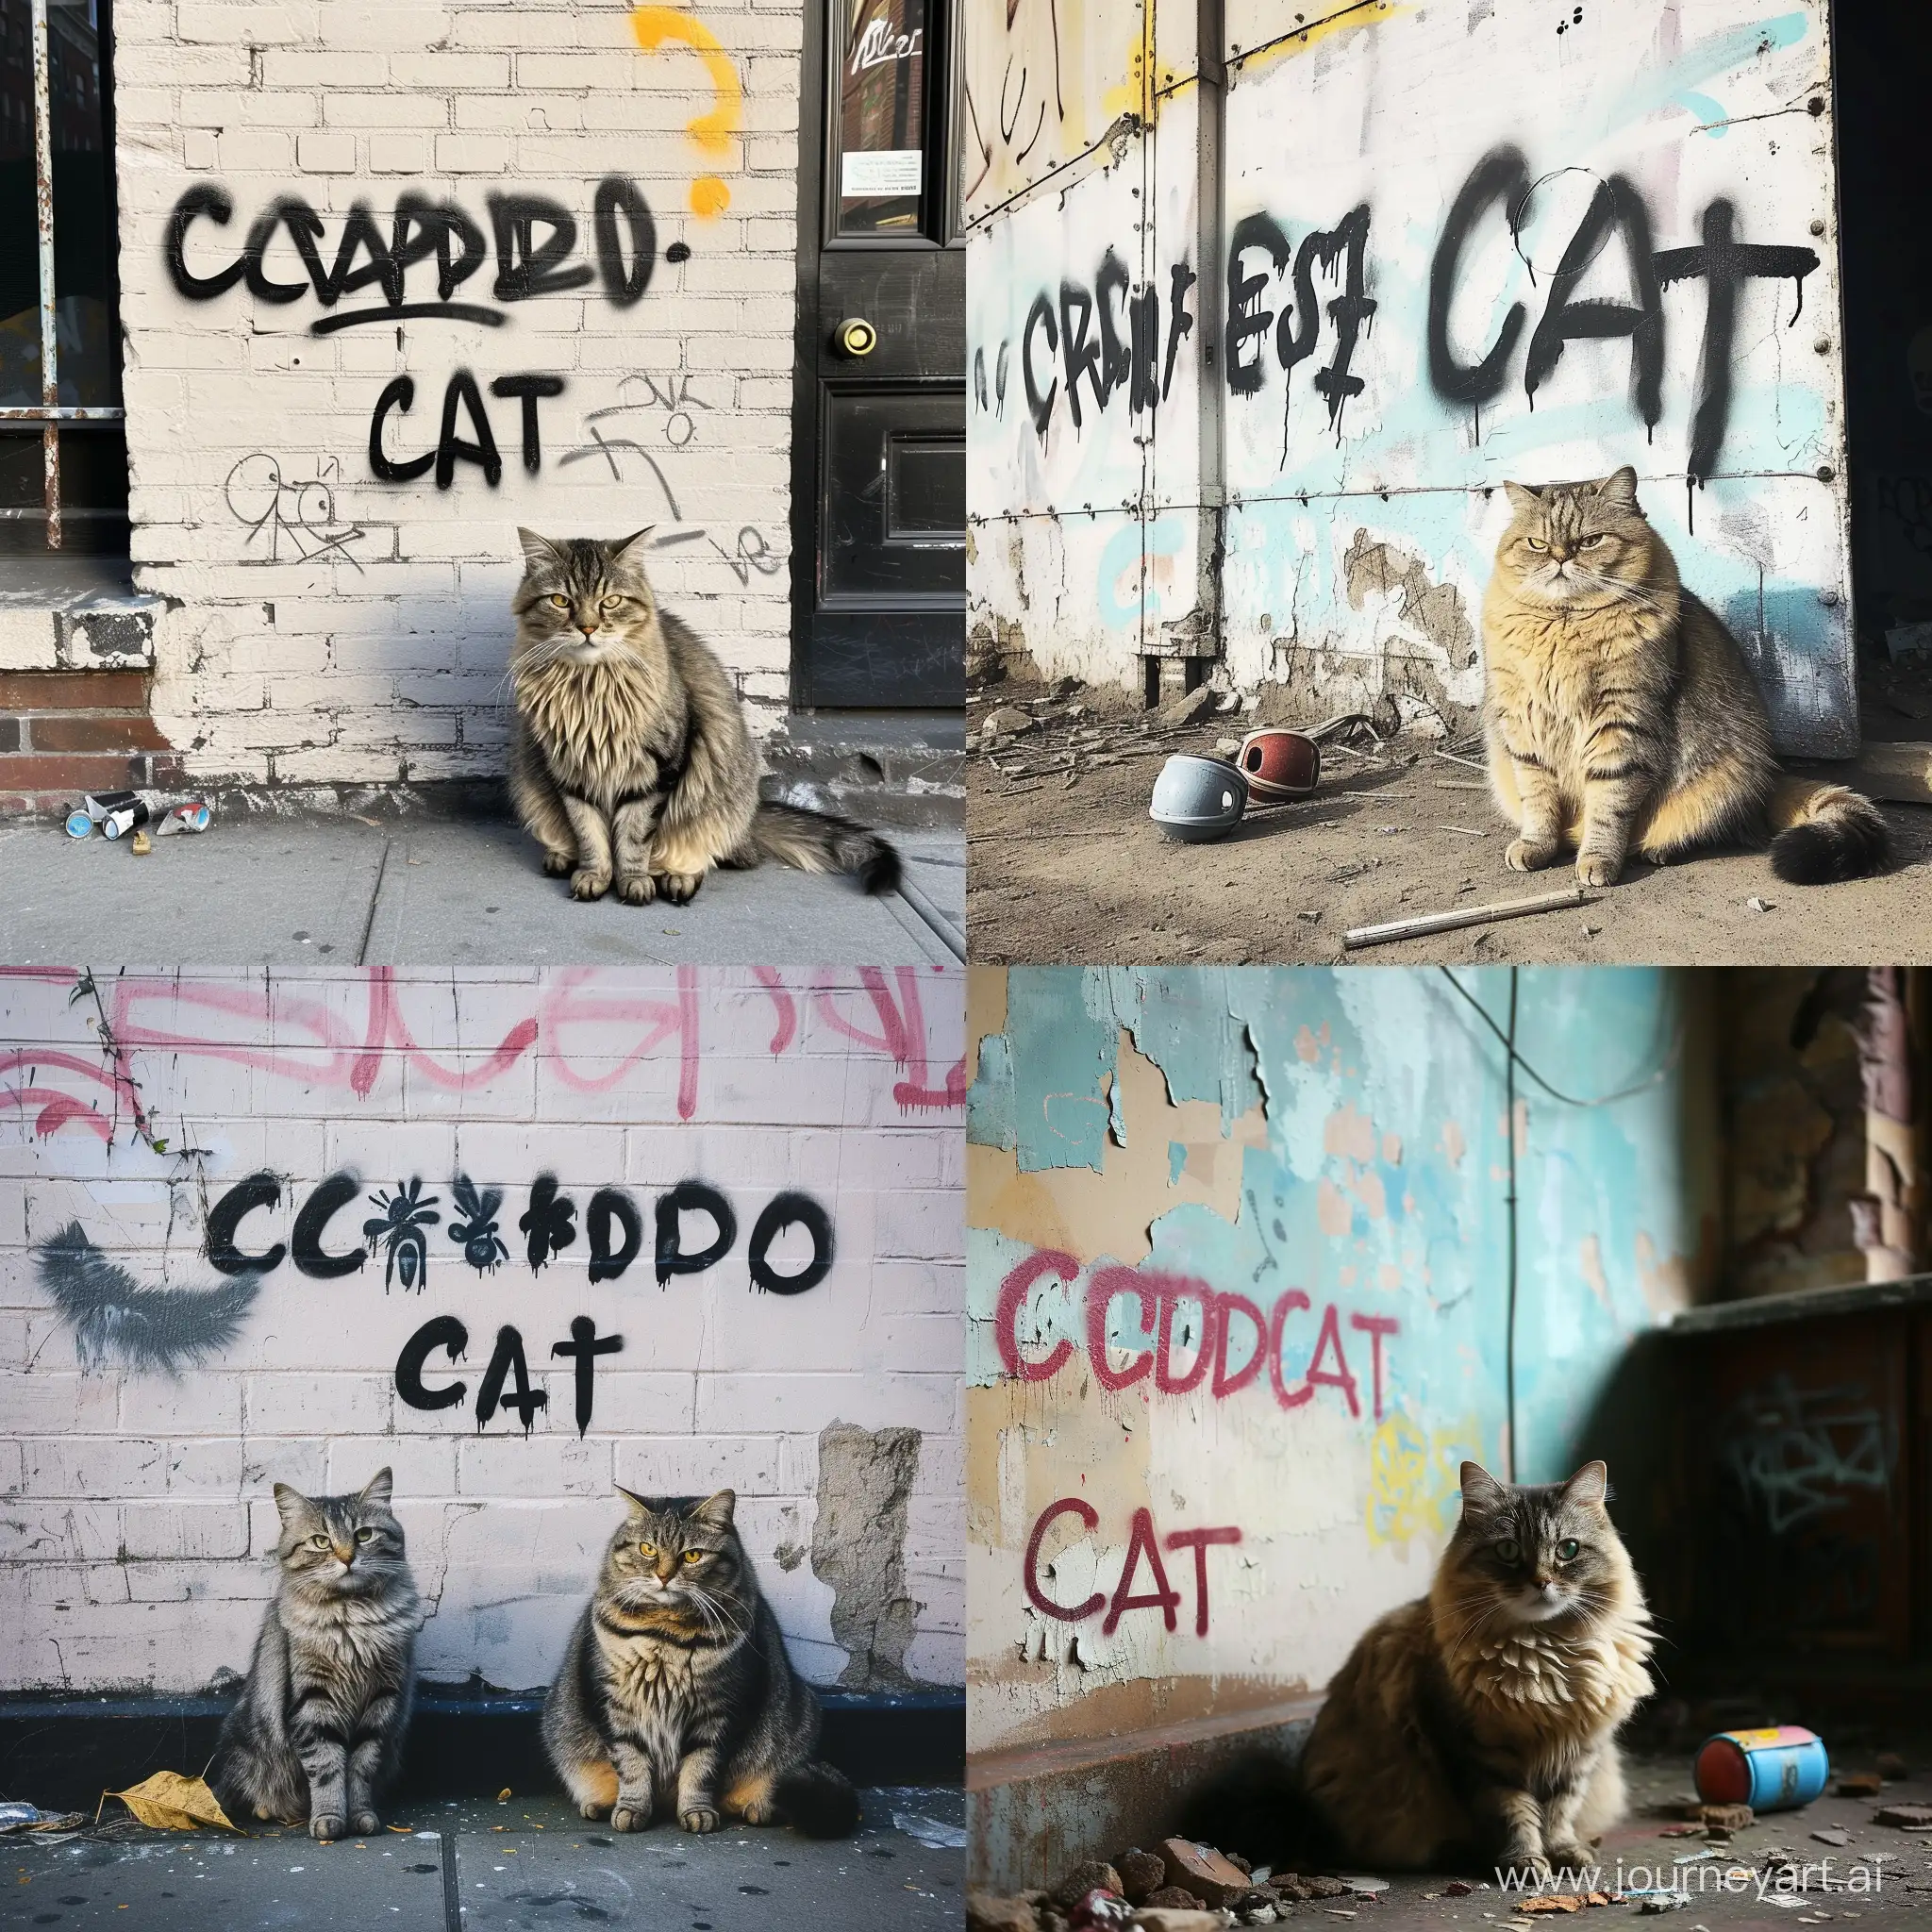 Надпись "Мятый Кот" графити на стене, рядом сидит красивый толстый кот